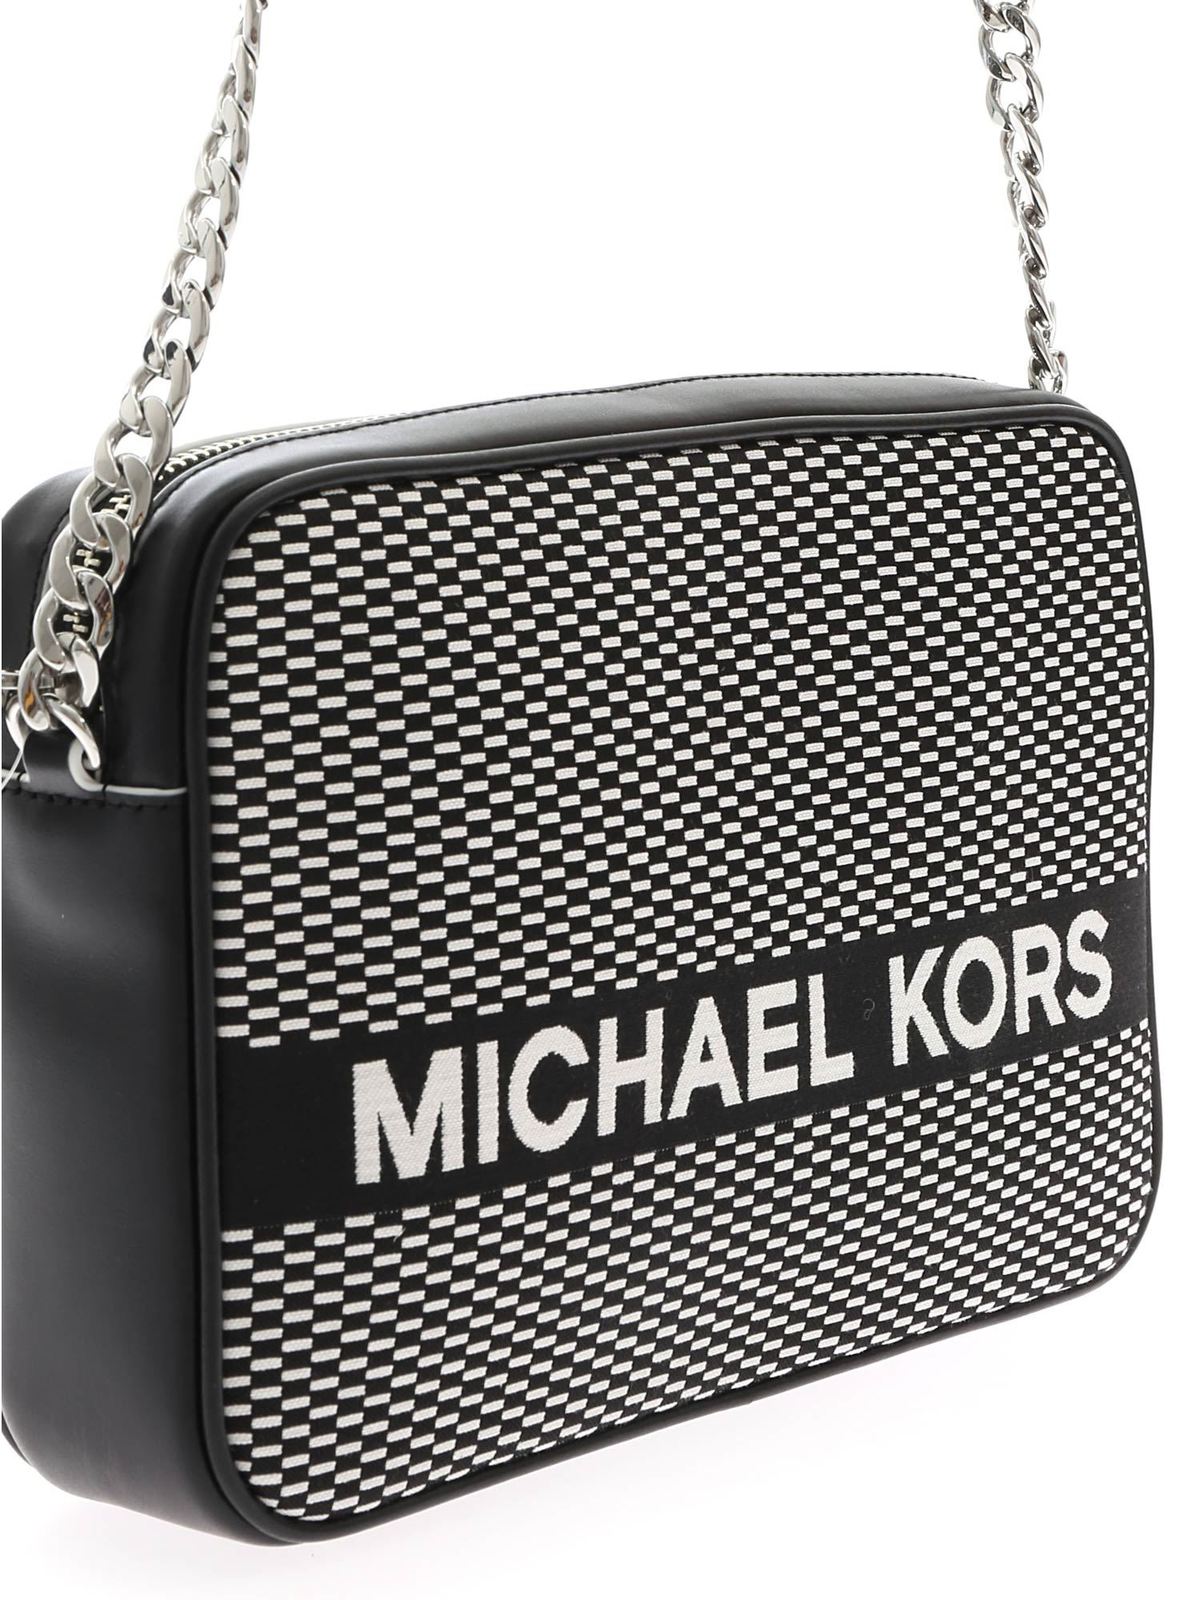 Michael Kors Jet Set Shoulder Bag